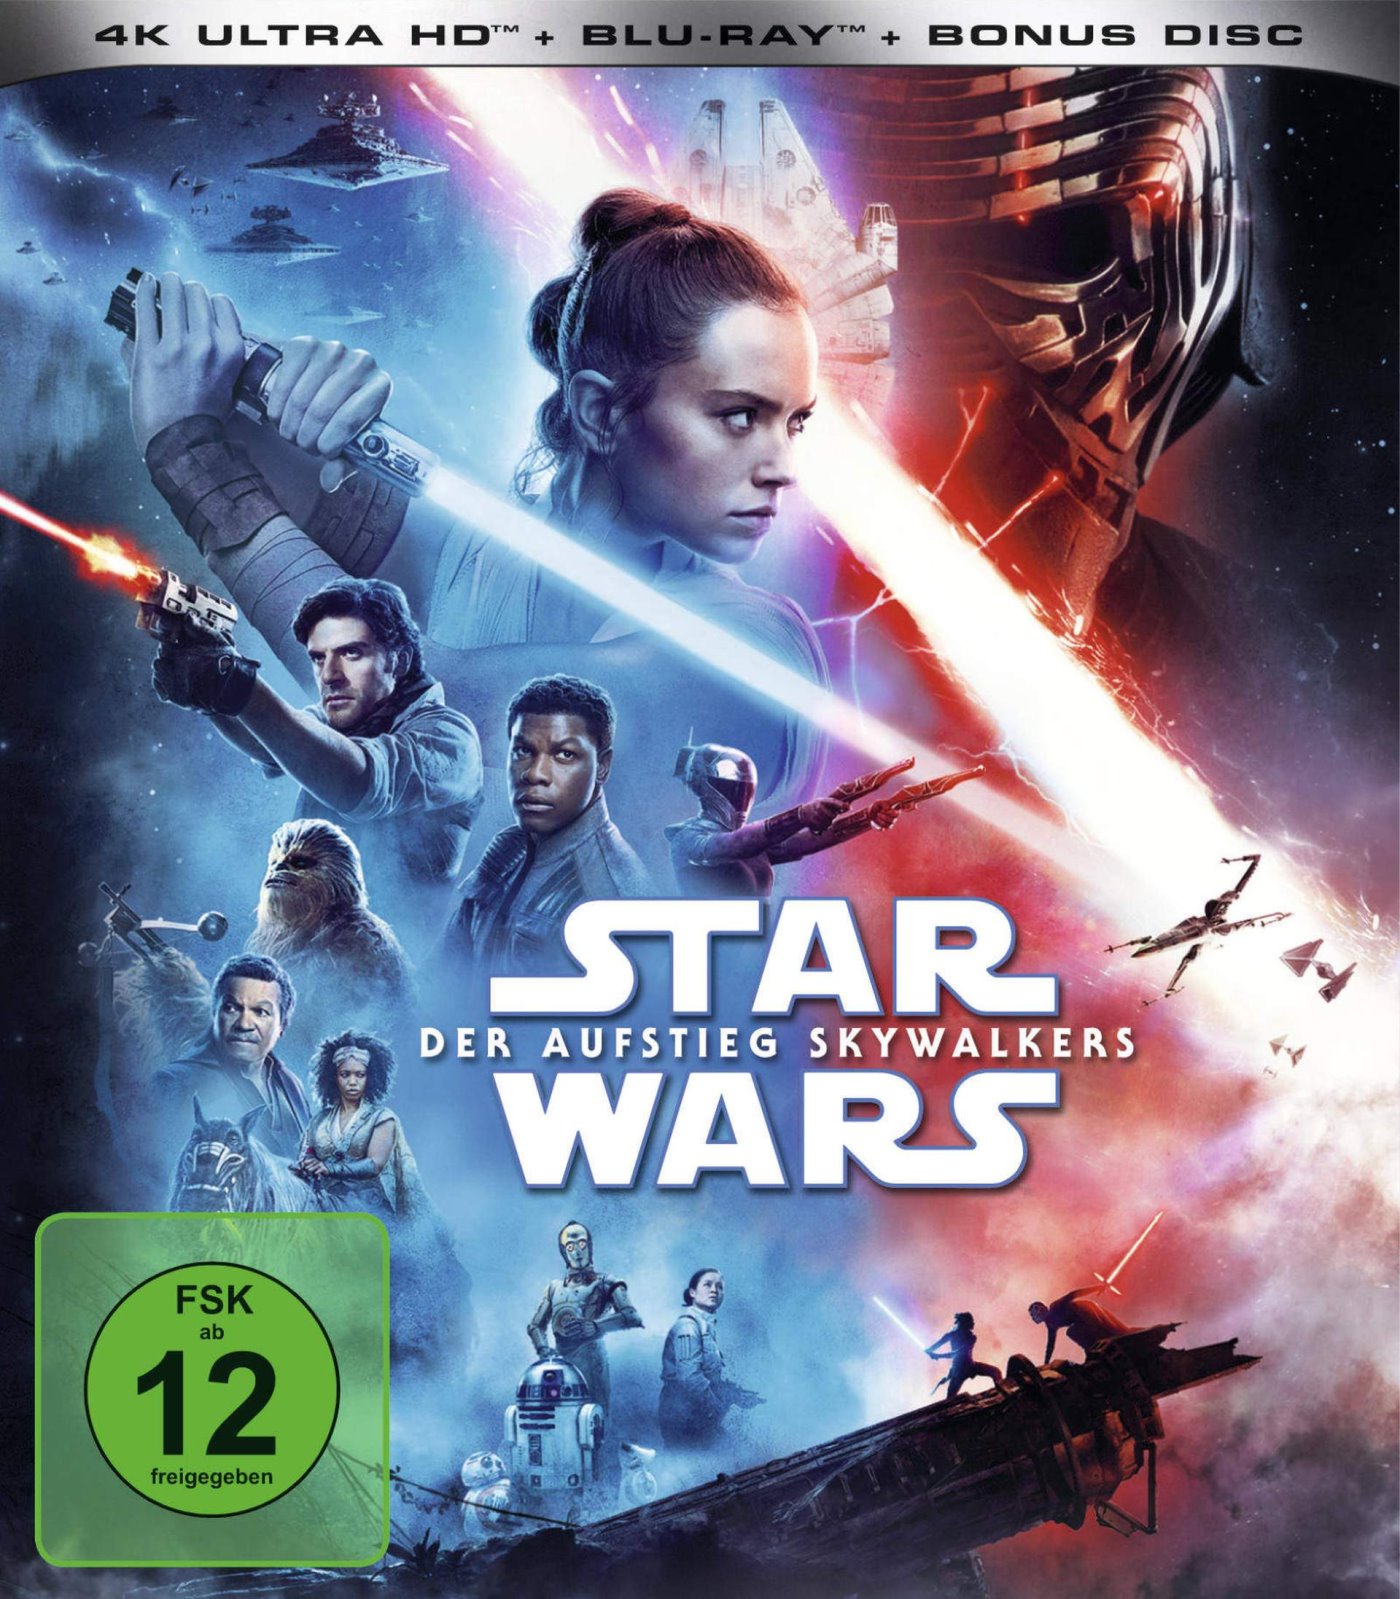 Cover - Star Wars - Der Aufstieg Skywalkers.jpg